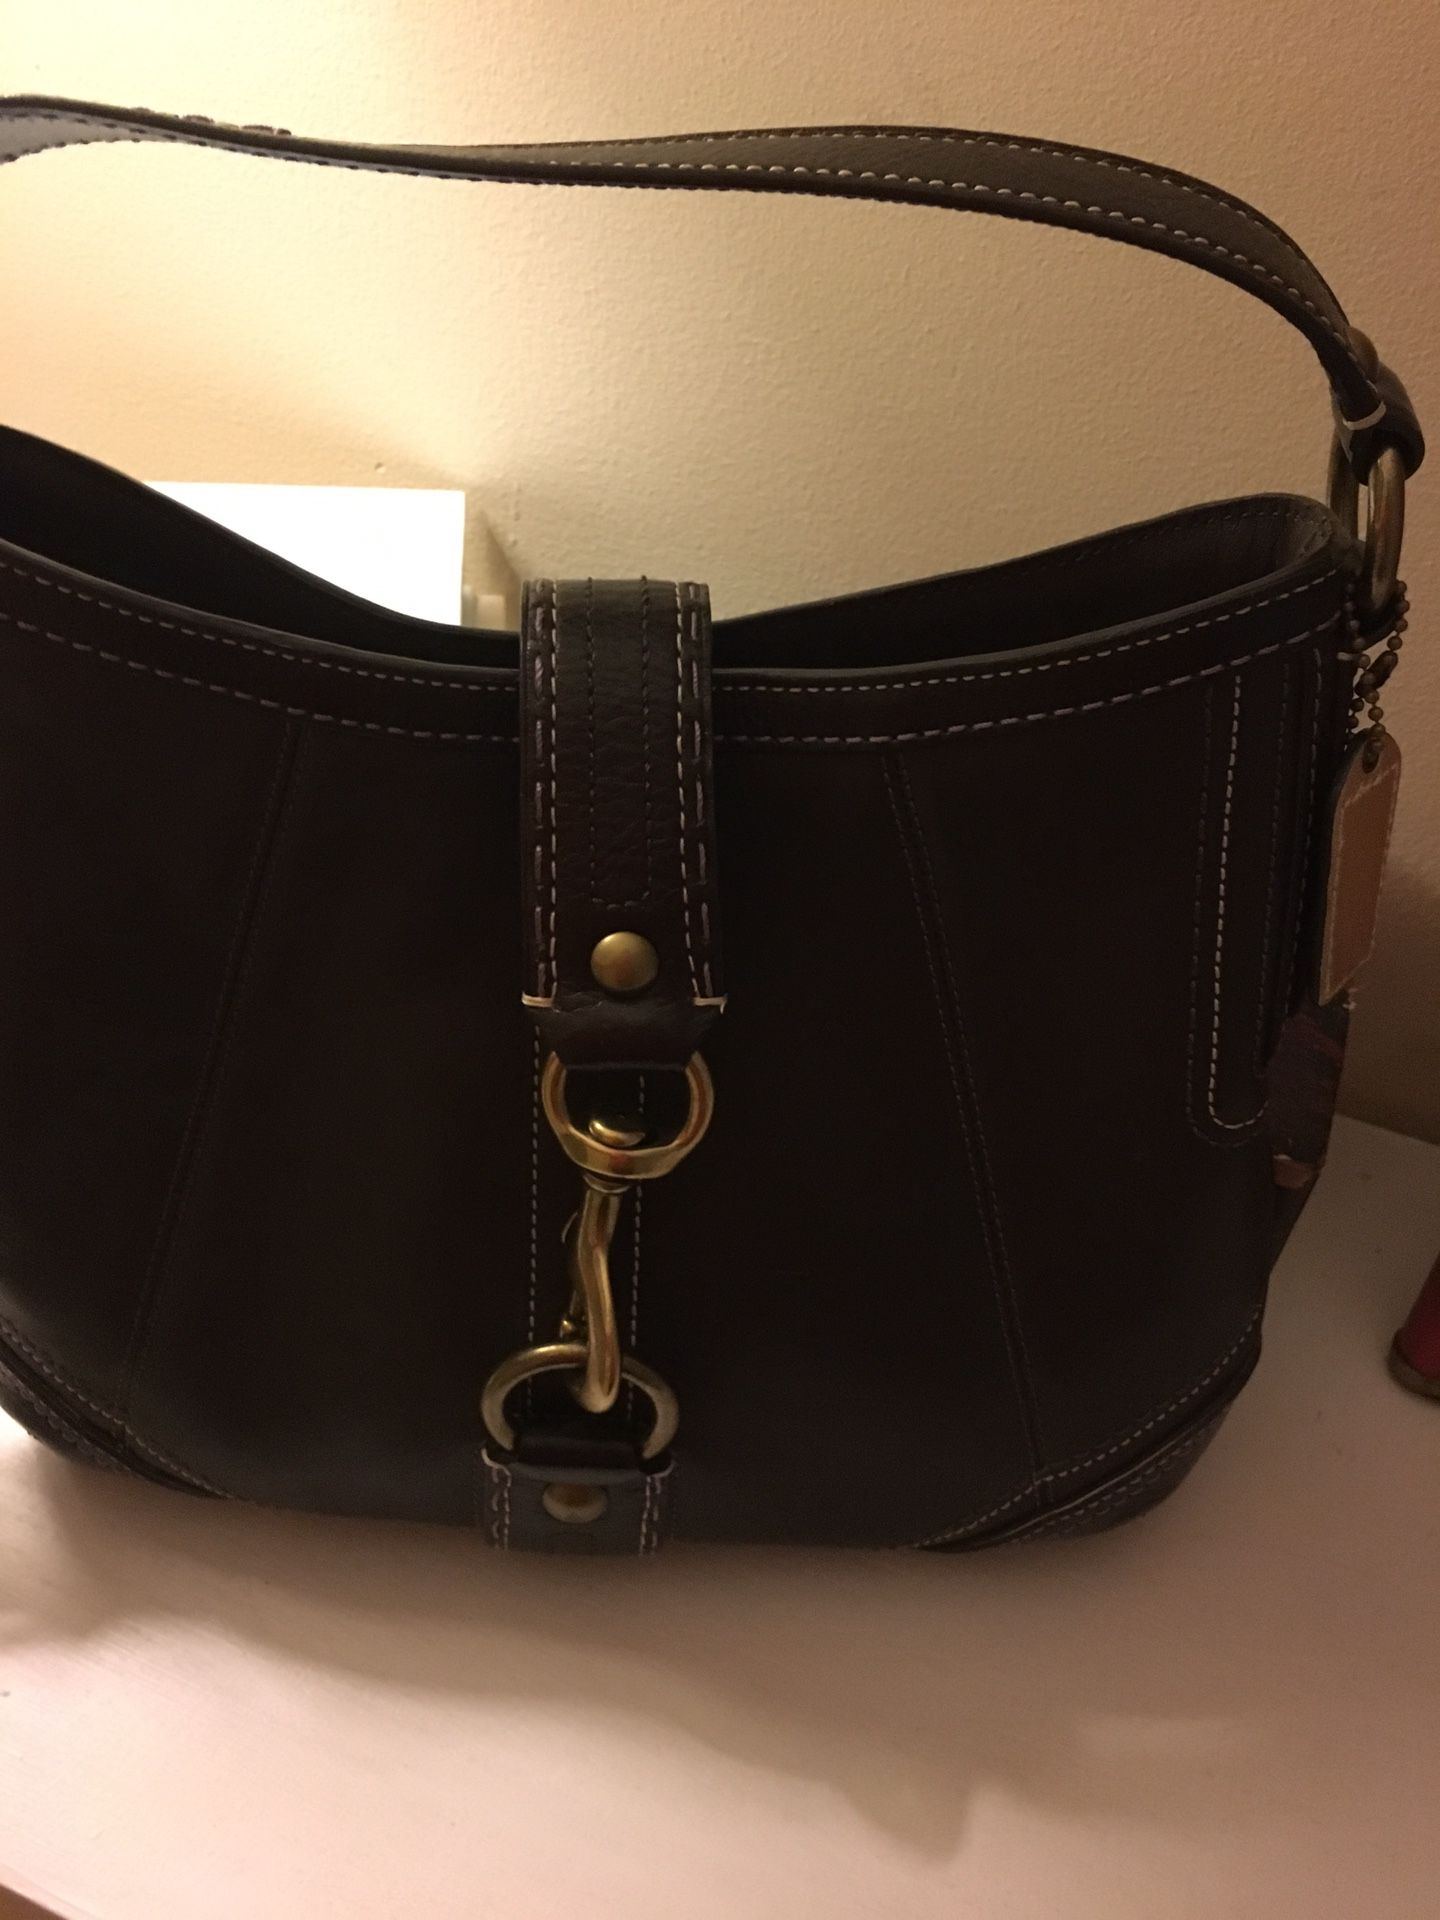 Authentic Coach purse